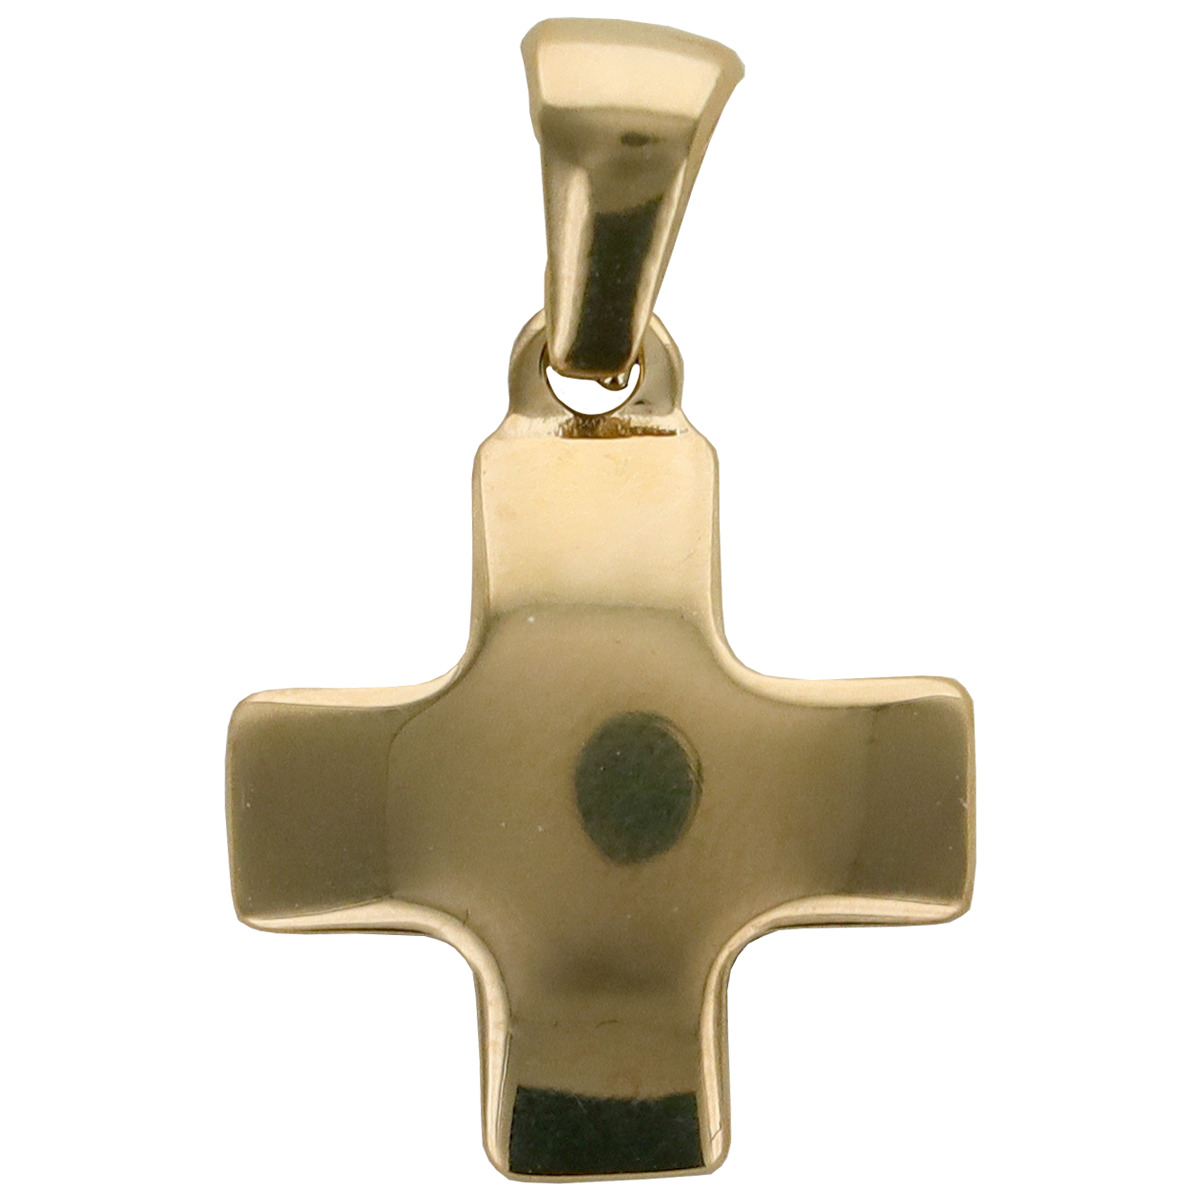 Croix de cou carrée et bombée en acier inoxydable, taille 1.5 x 1.5 cm. Existe en différentes couleurs.